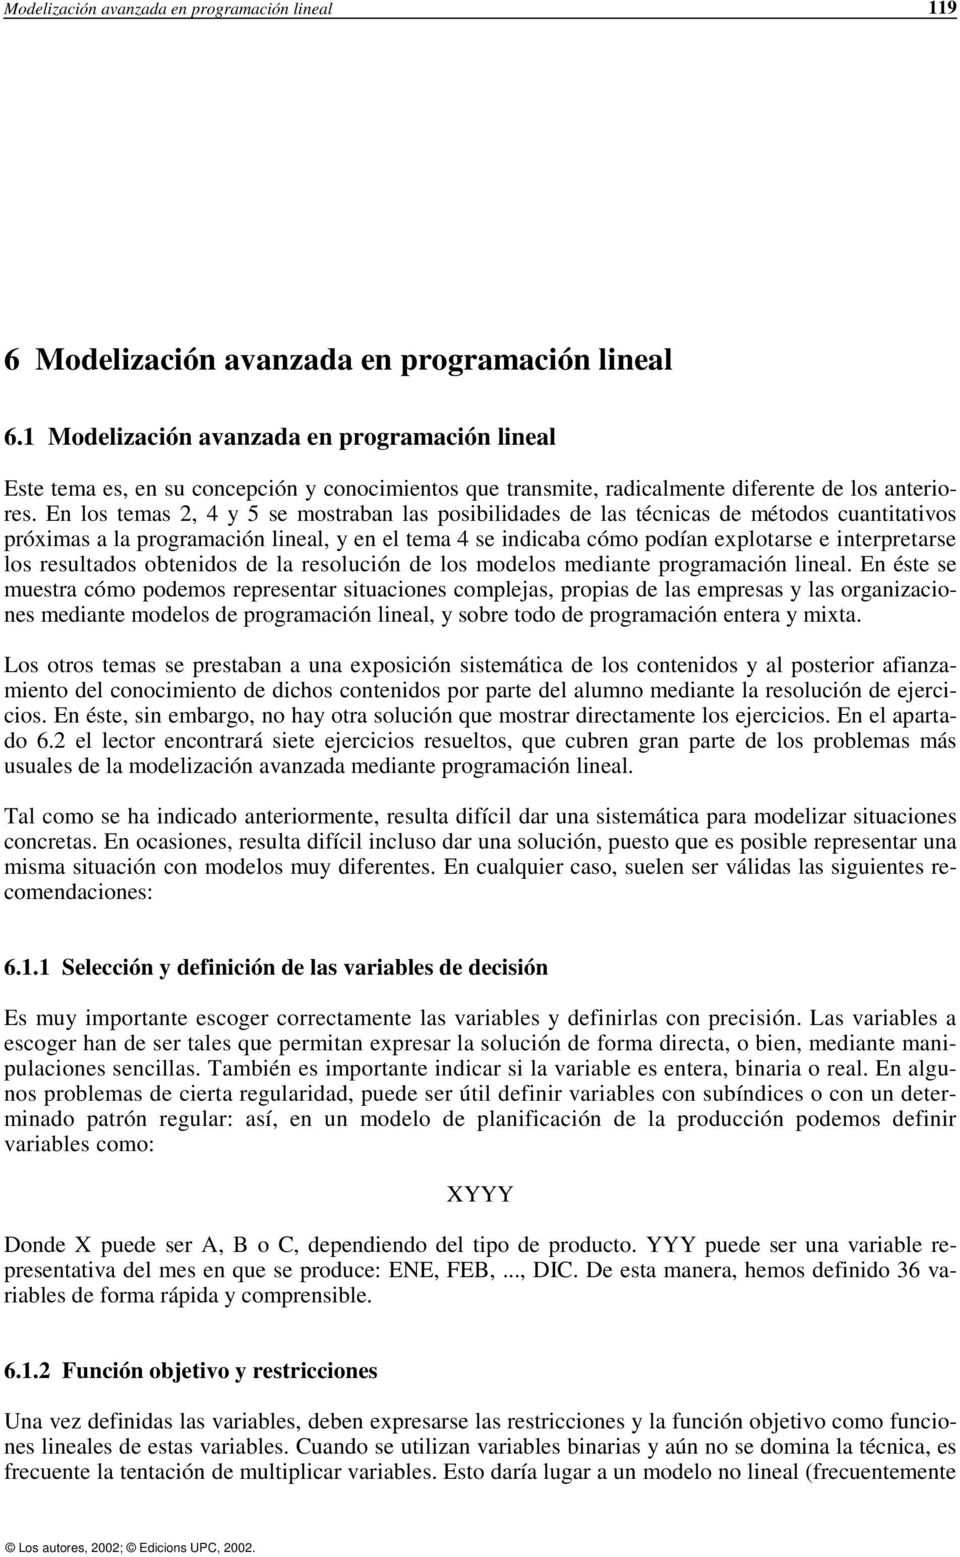 En los temas 2, 4 y 5 se mostraban las posibilidades de las técnicas de métodos cuantitativos próximas a la programación lineal, y en el tema 4 se indicaba cómo podían explotarse e interpretarse los